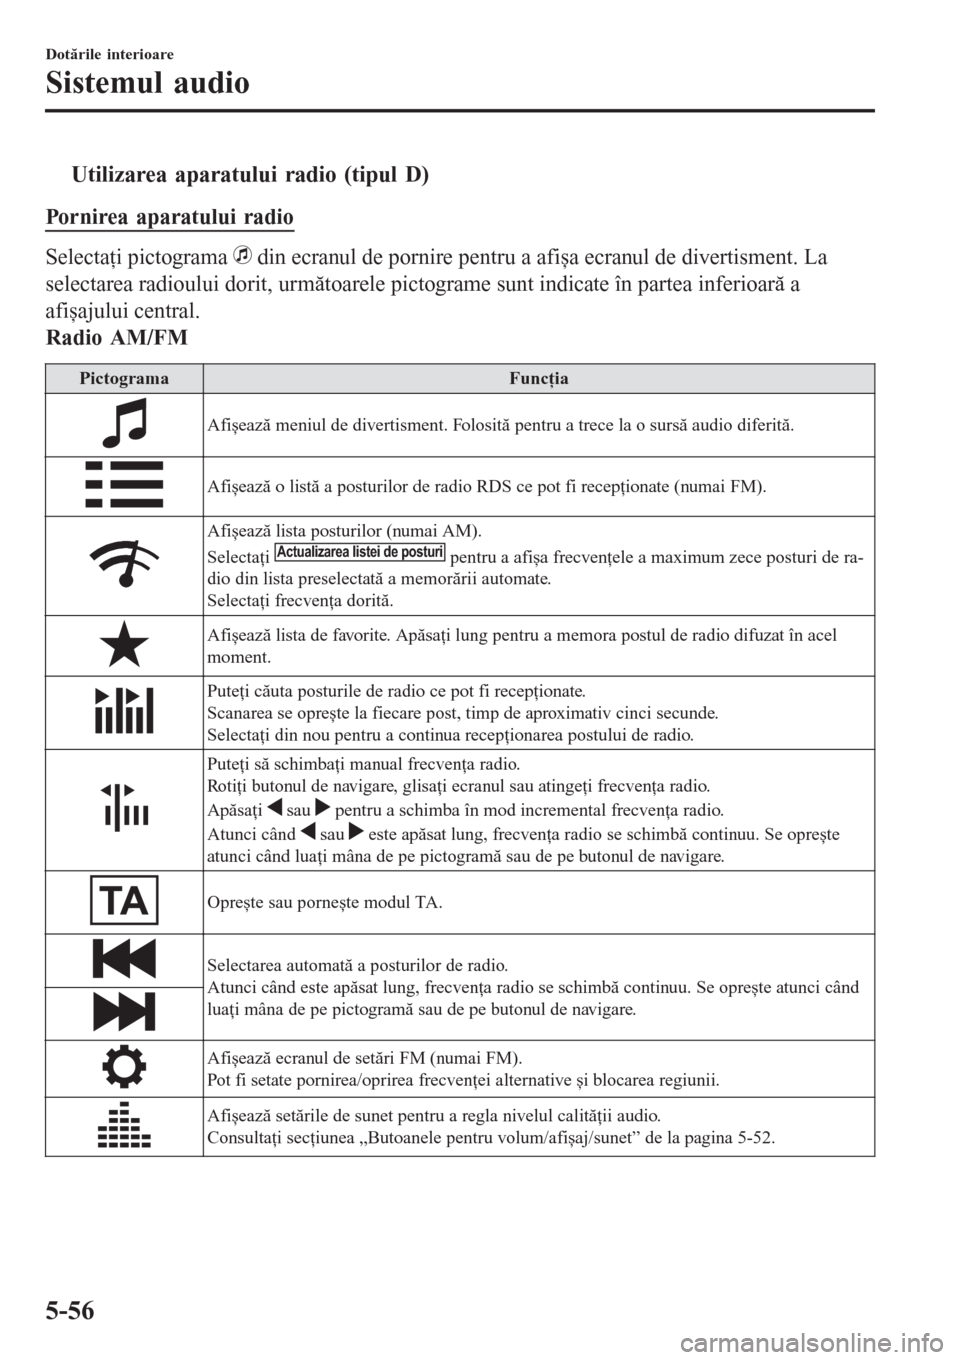 MAZDA MODEL 3 HATCHBACK 2015  Manualul de utilizare (in Romanian) tUtilizarea aparatului radio (tipul D)
Pornirea aparatului radio
Selectaţi pictograma  din ecranul de pornire pentru a afișa ecranul de divertisment. La
selectarea radioului dorit, următoarele pict